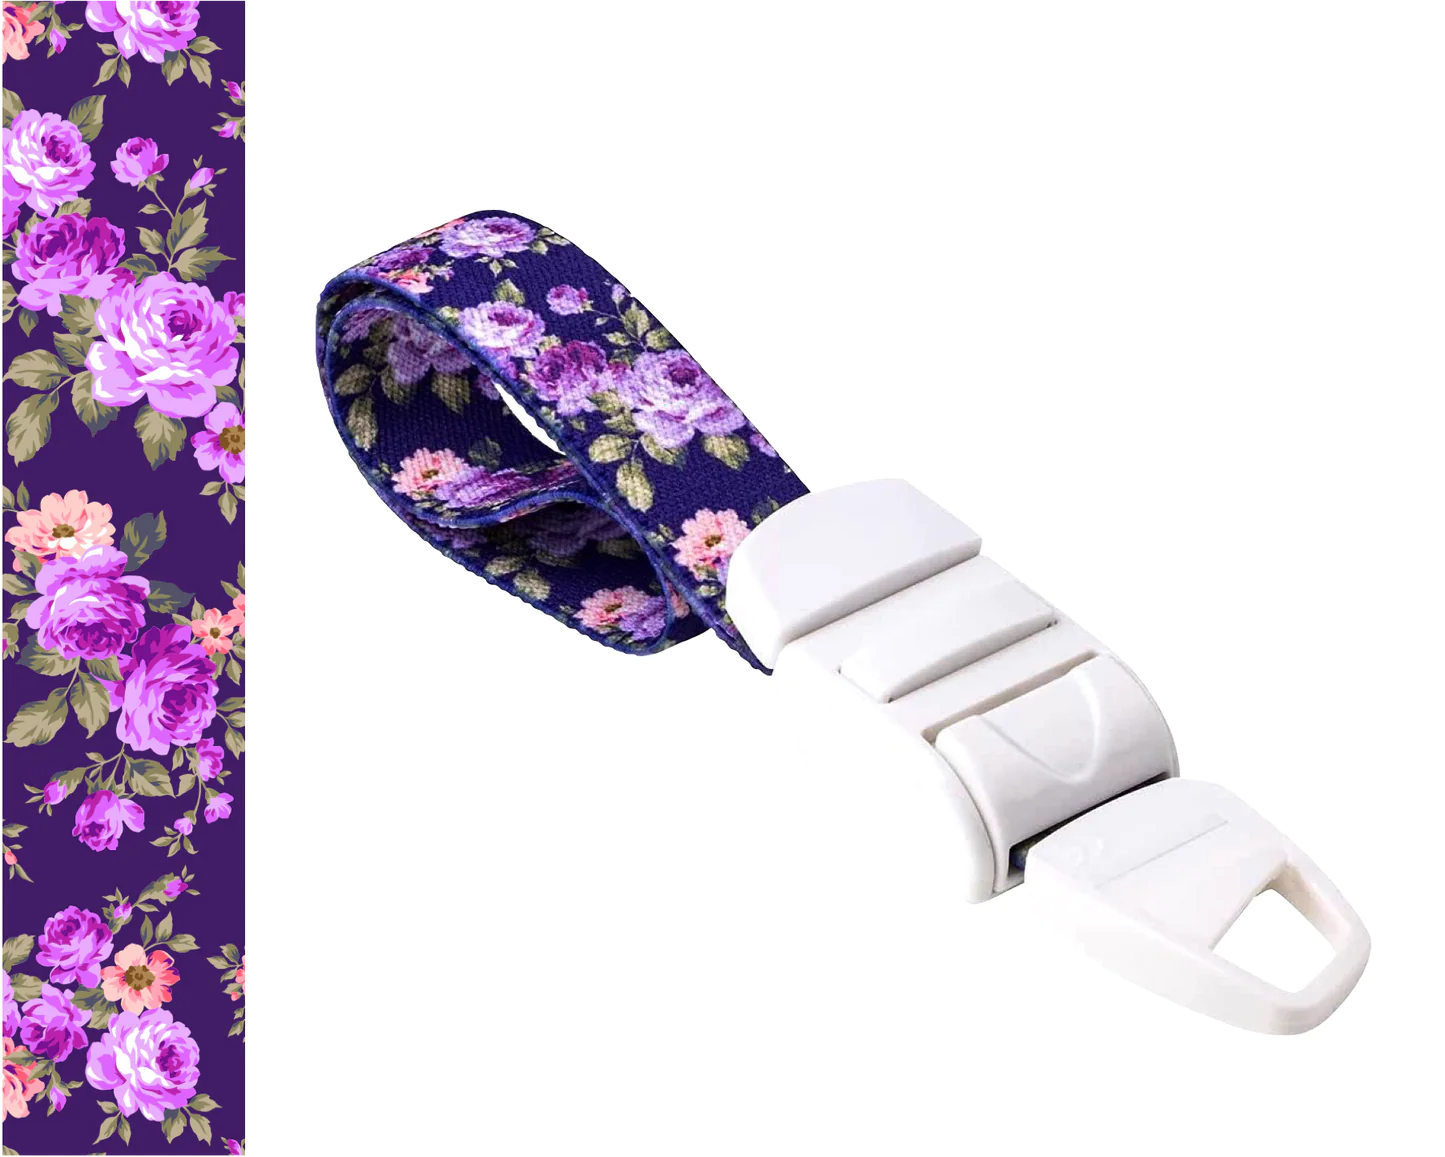 MEDICININIS TURNIKETAS su violetiniu gėlių raštų dirželiu ir balta sagtele. Pateikiamas turniketo juostelės rašto paveikslėlis